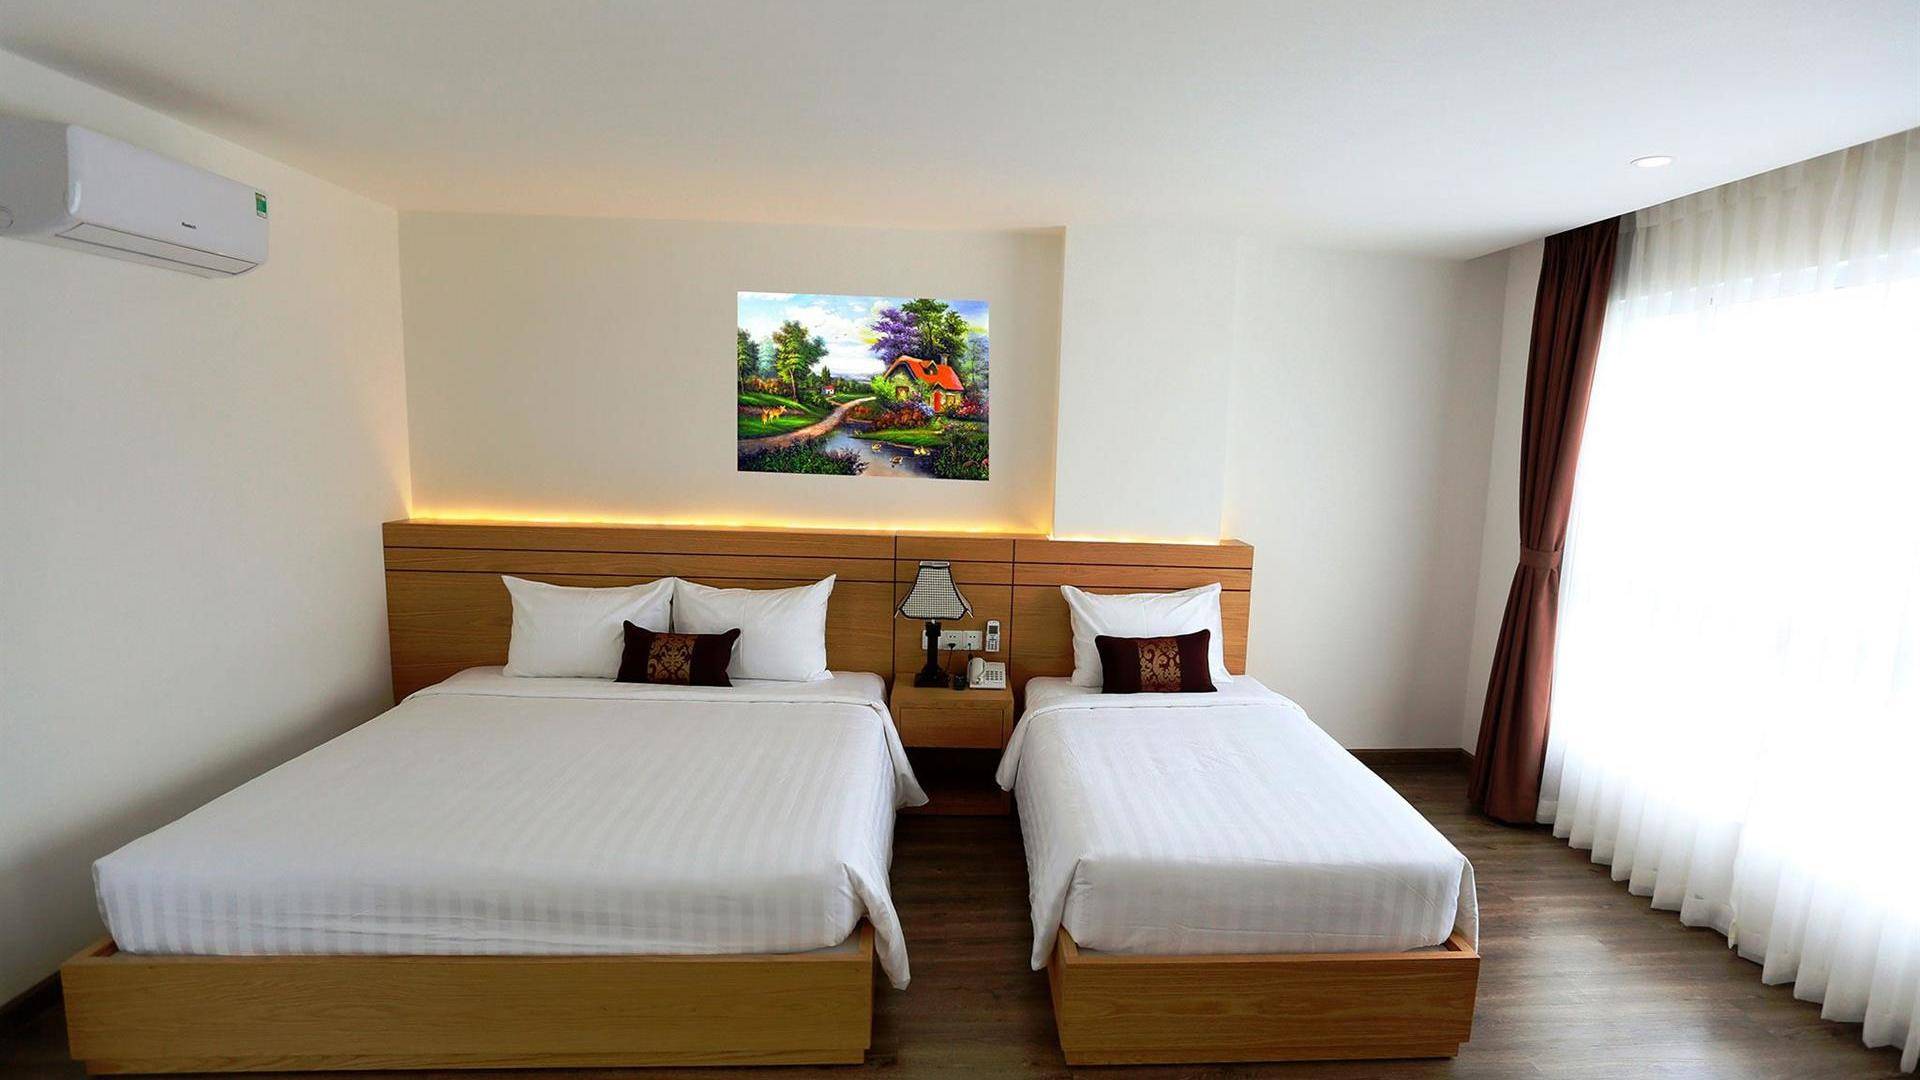 Phuong nhung hotel 2* (вьетнам/провинция кханьхоа/нячанг). отзывы отеля. рейтинг отелей и гостиниц мира - hotelscheck.